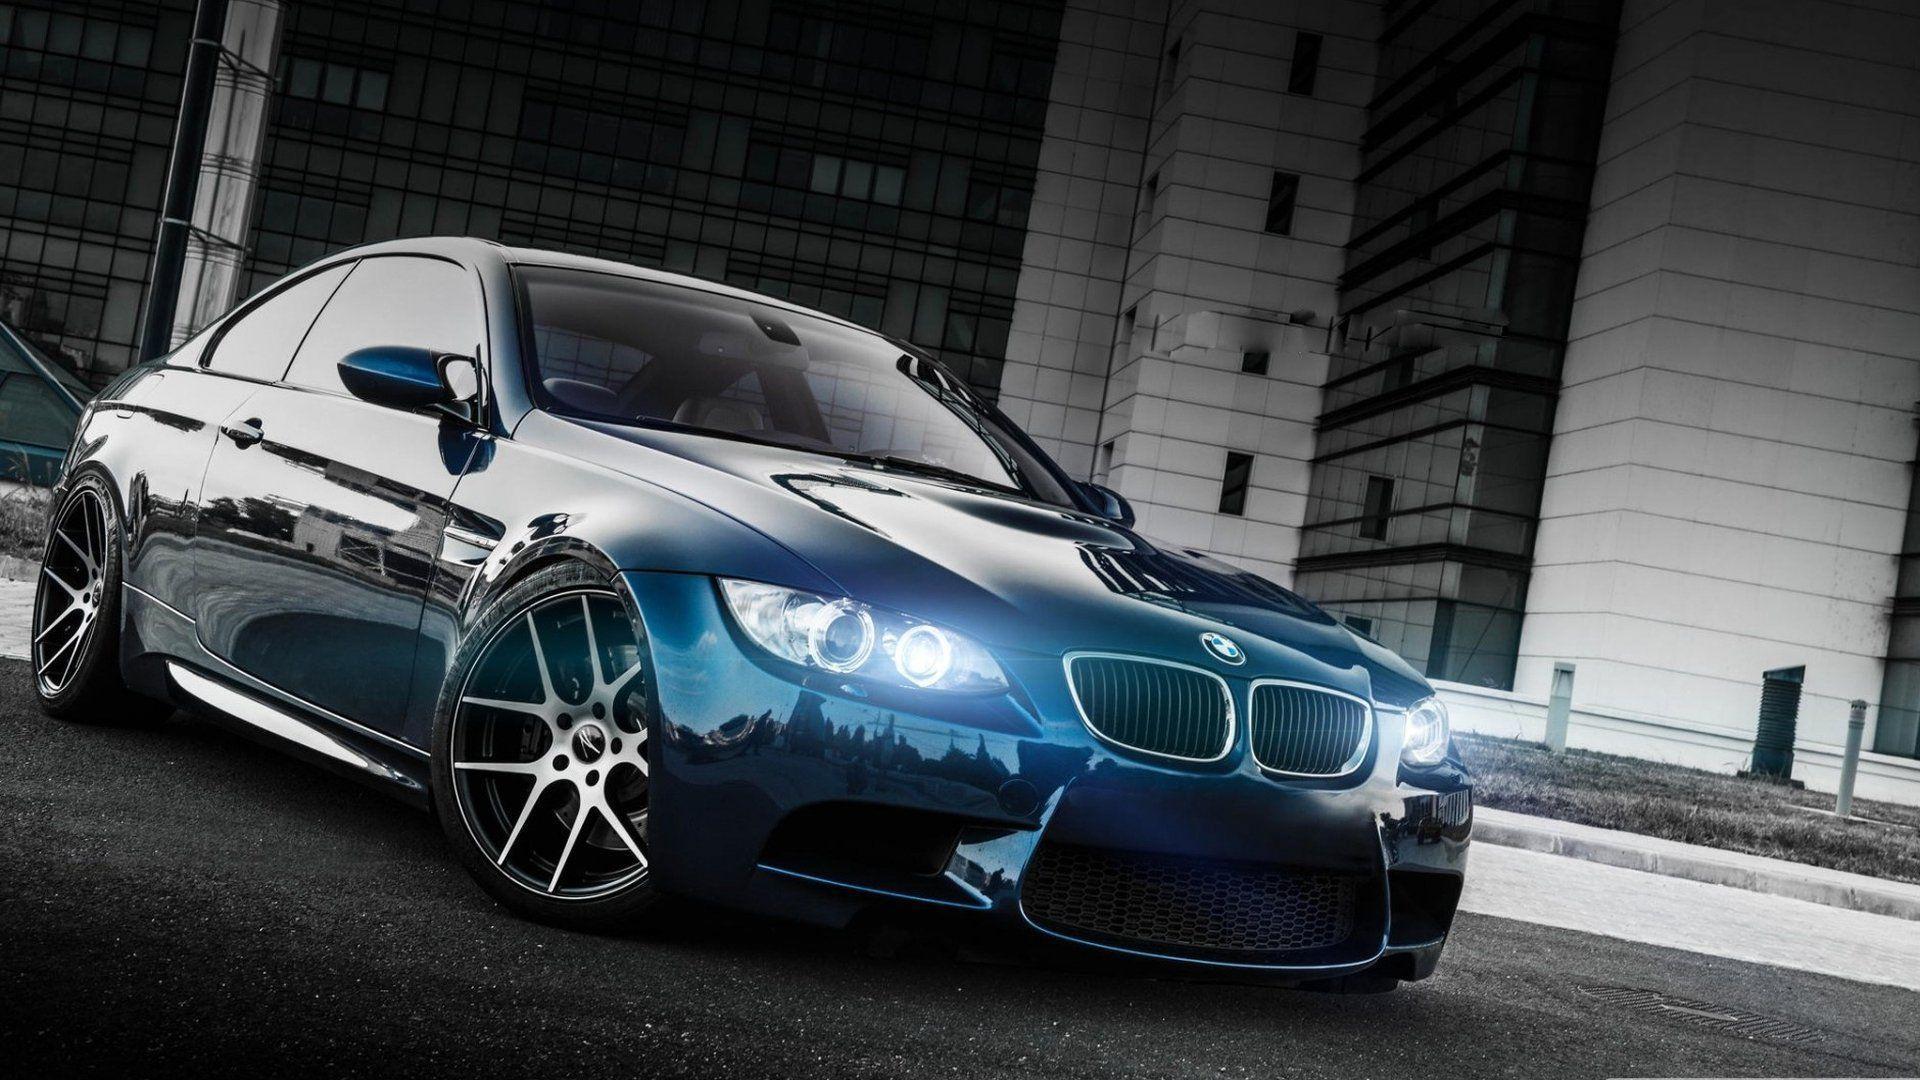 BMW M3 HD Wallpaper